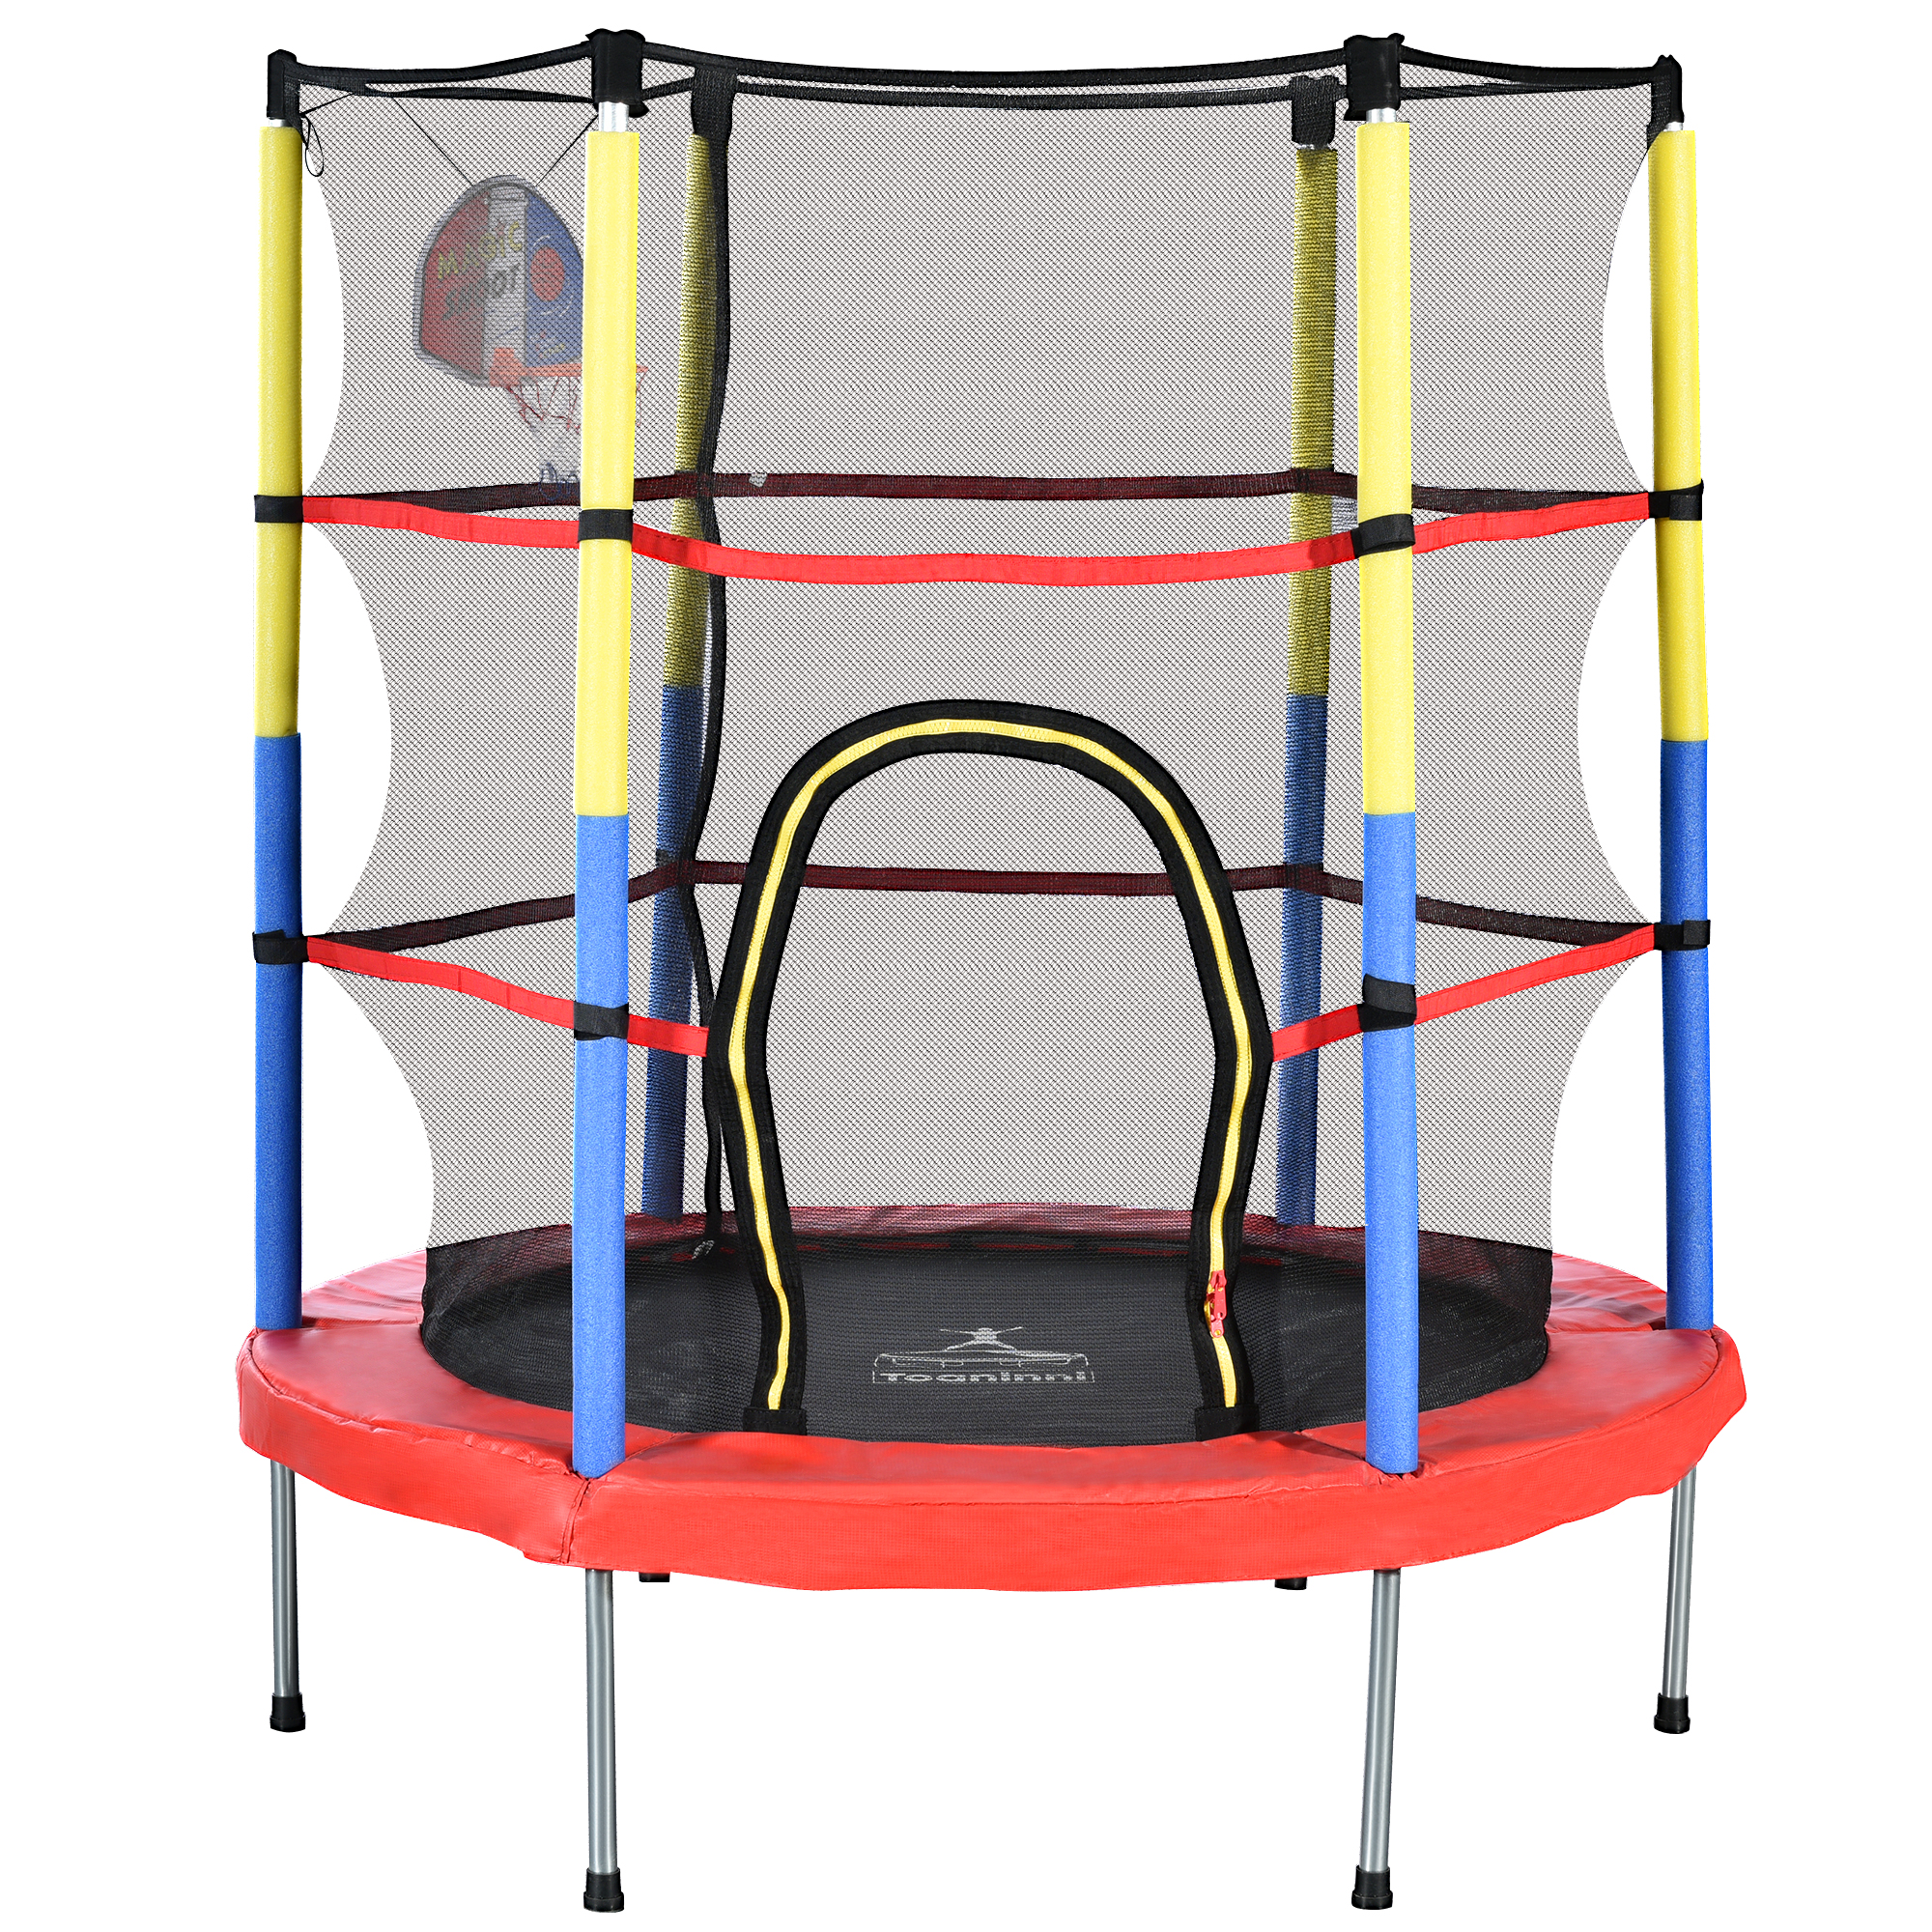 Merax Mini trampolína φ140 cm detská trampolína s bezpečnostnou sieťou a basketbalovým košom, vnútorná a vonkajšia trampolína pre deti, fitness trampolína s nosnosťou do 45 kg, červená/žltá/modrá